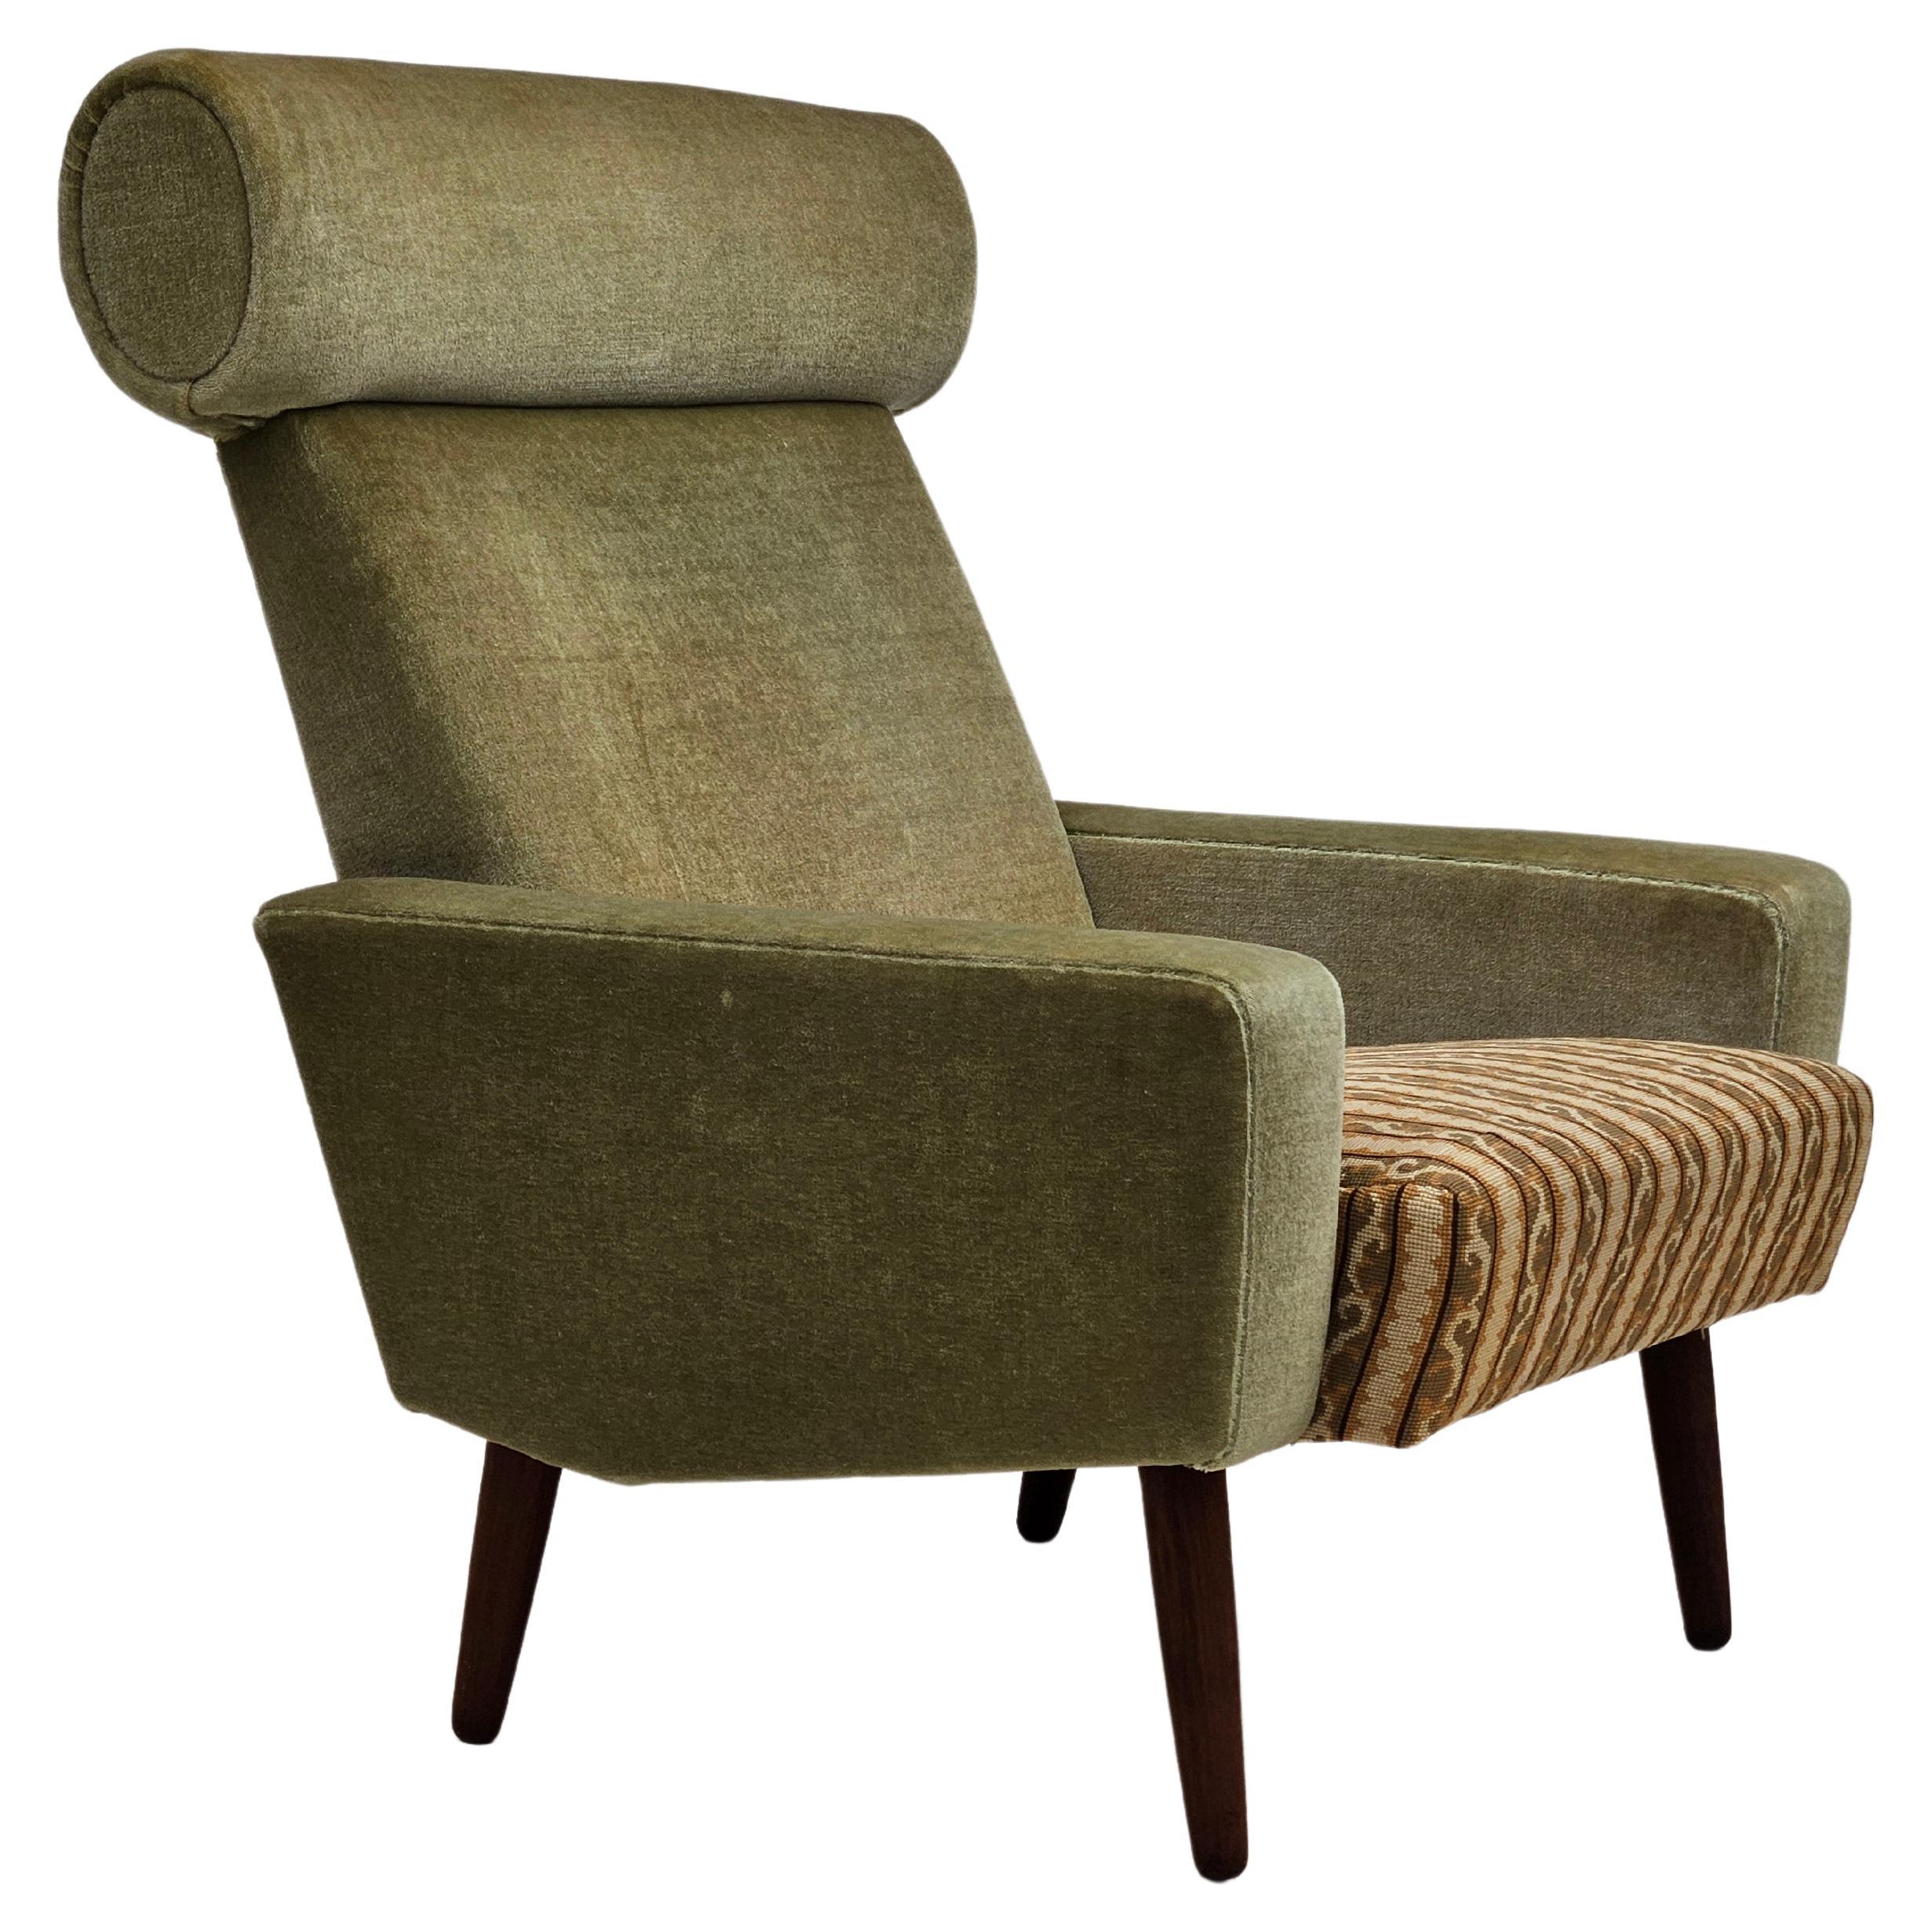 Dänischer relax-Stuhl, Originalzustand, 1970er Jahre, Möbelgarnitur, geflochtener Stoff.